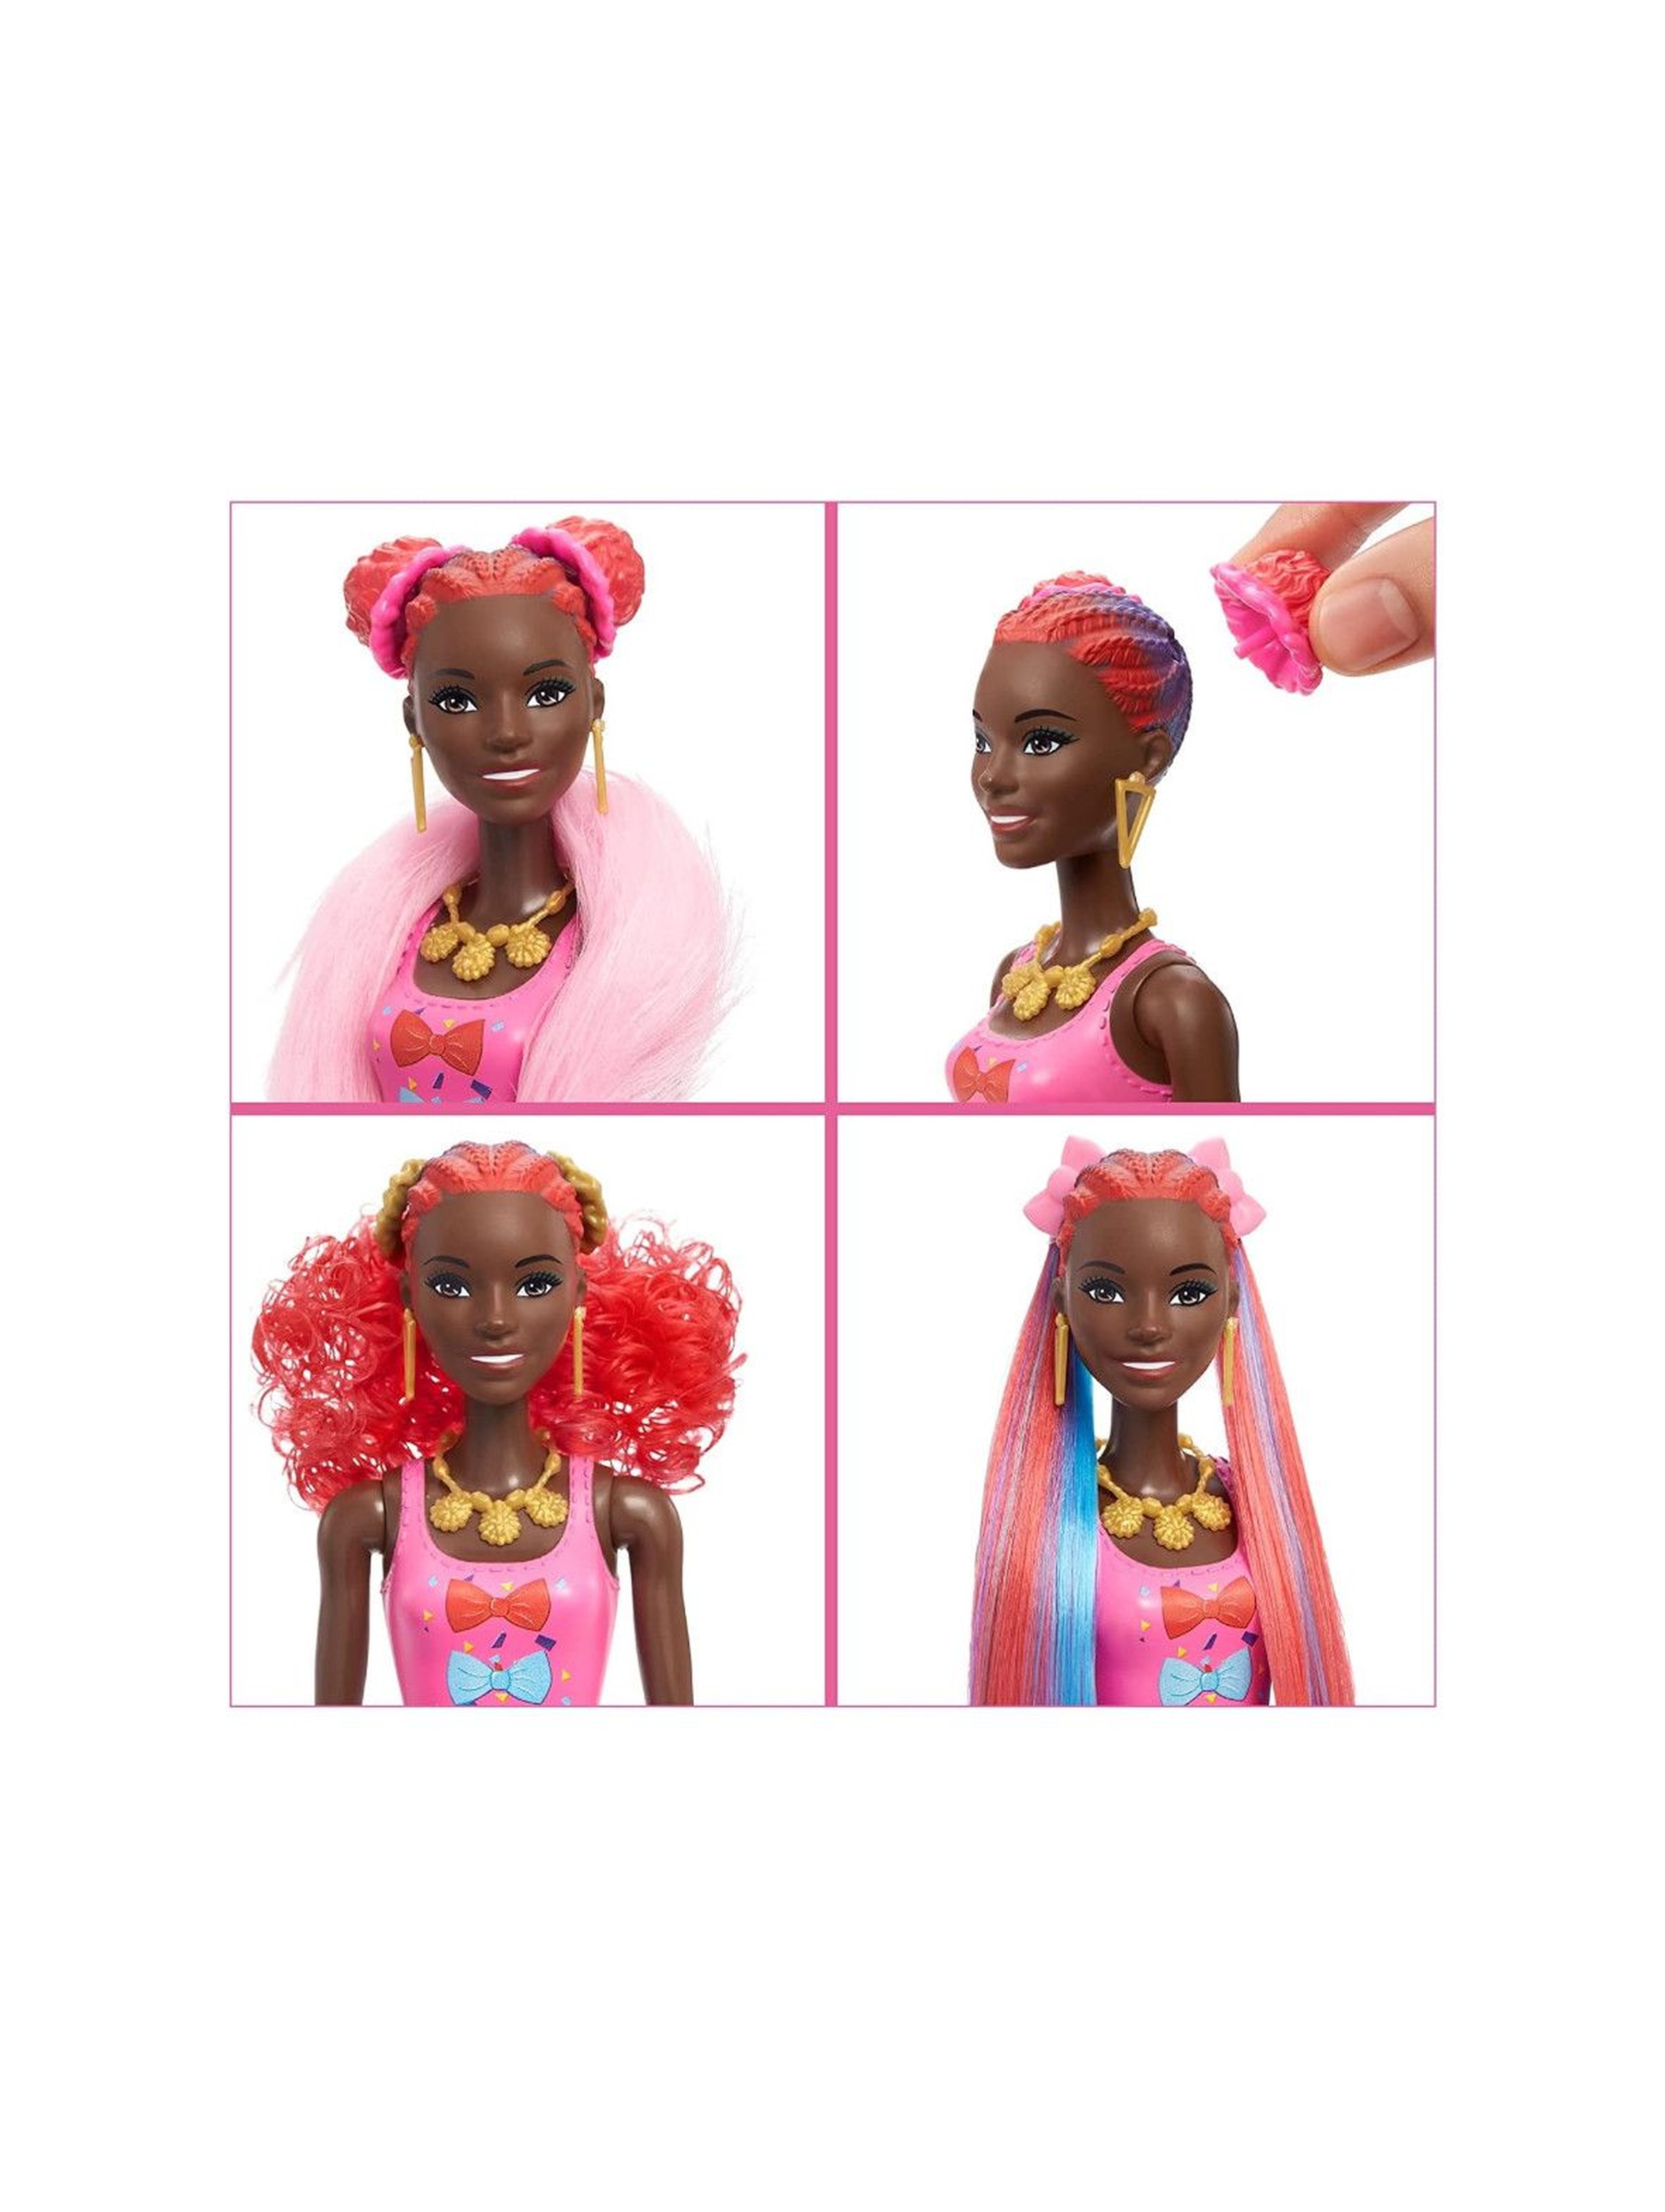 Barbie Color Reveal Imprezowe stylizacje Lalka + zwierzątko i akcesoria